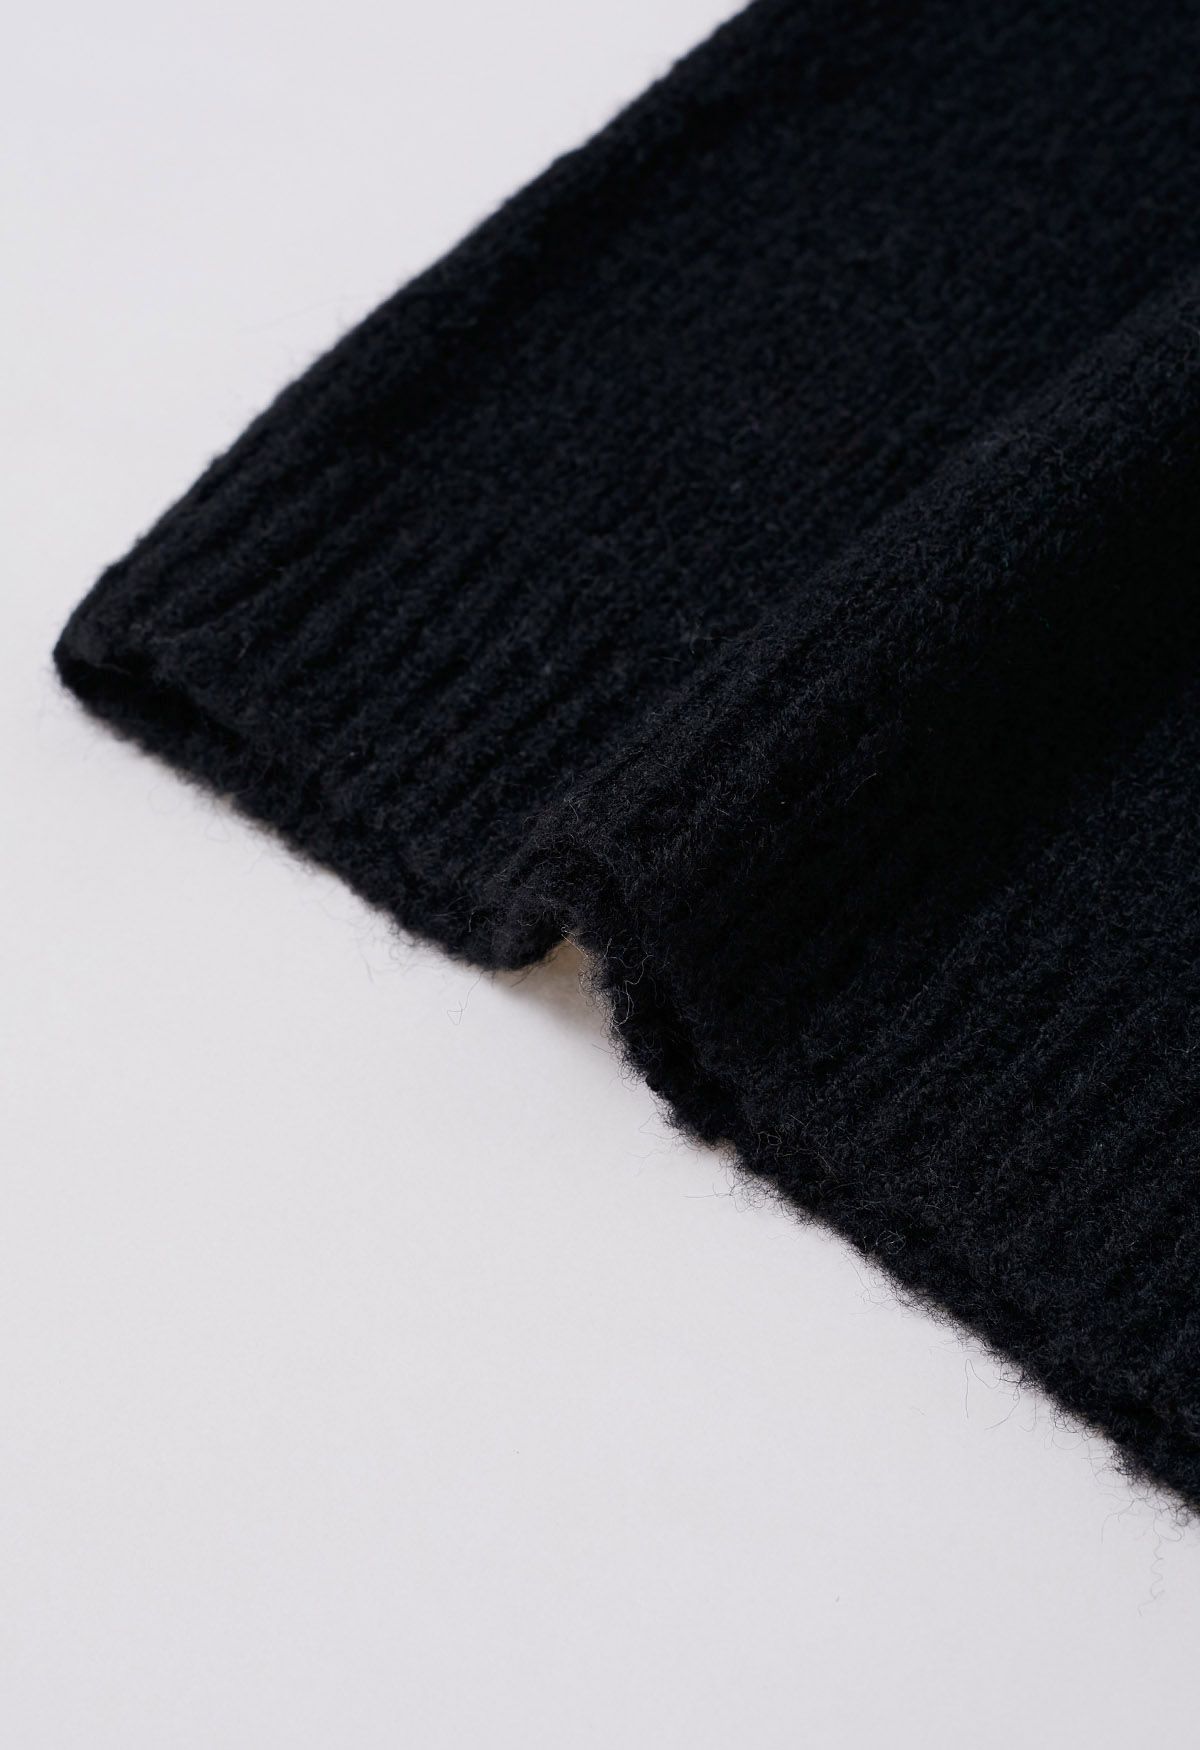 Newleaf Pattern Fuzzy Knit Sweater in Black